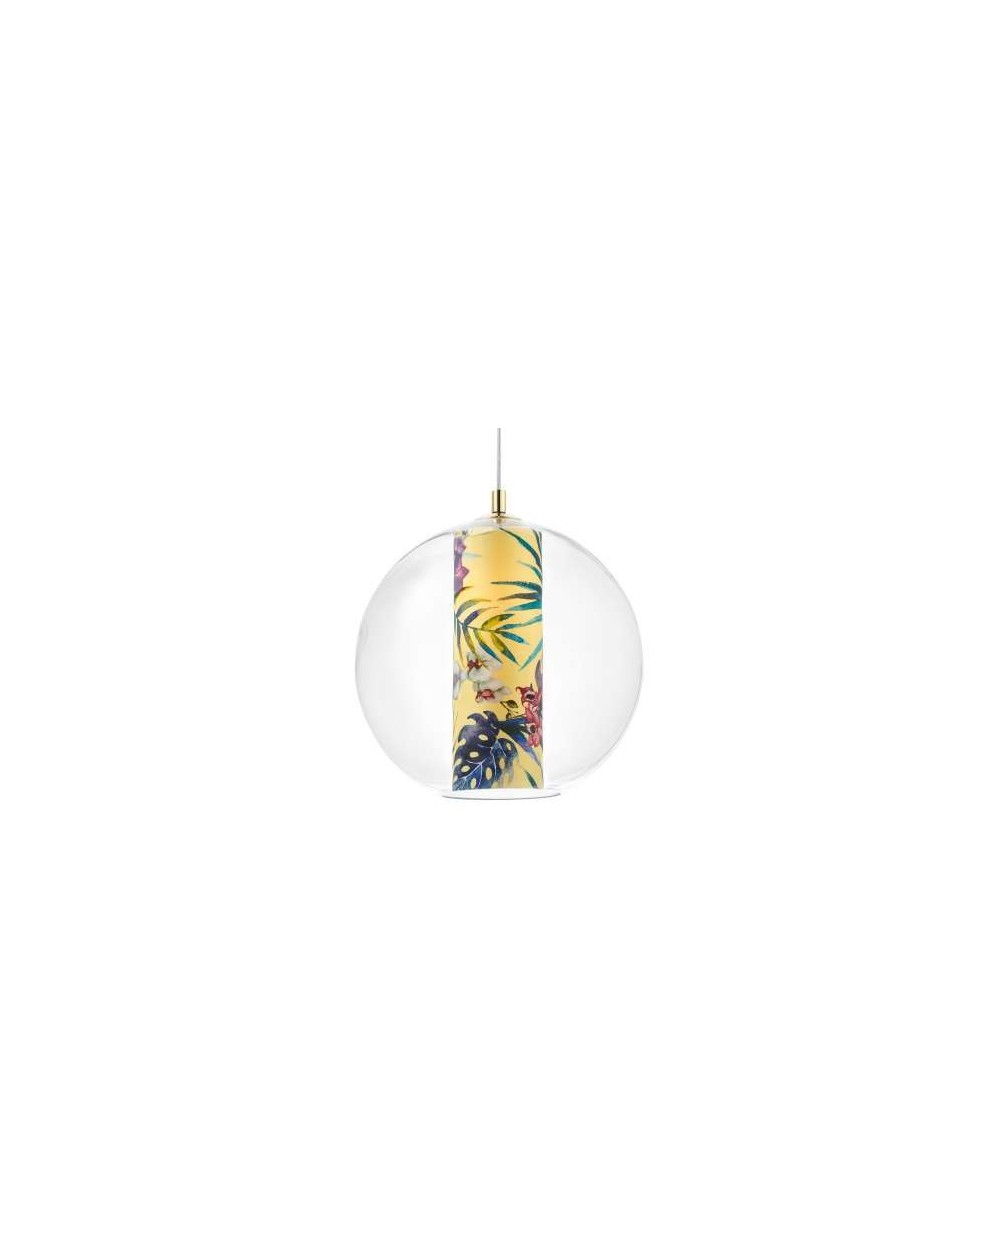 FERIA L lampa wisząca szklana kula z kolorowym wnętrzem w kształcie tuby - Kaspa